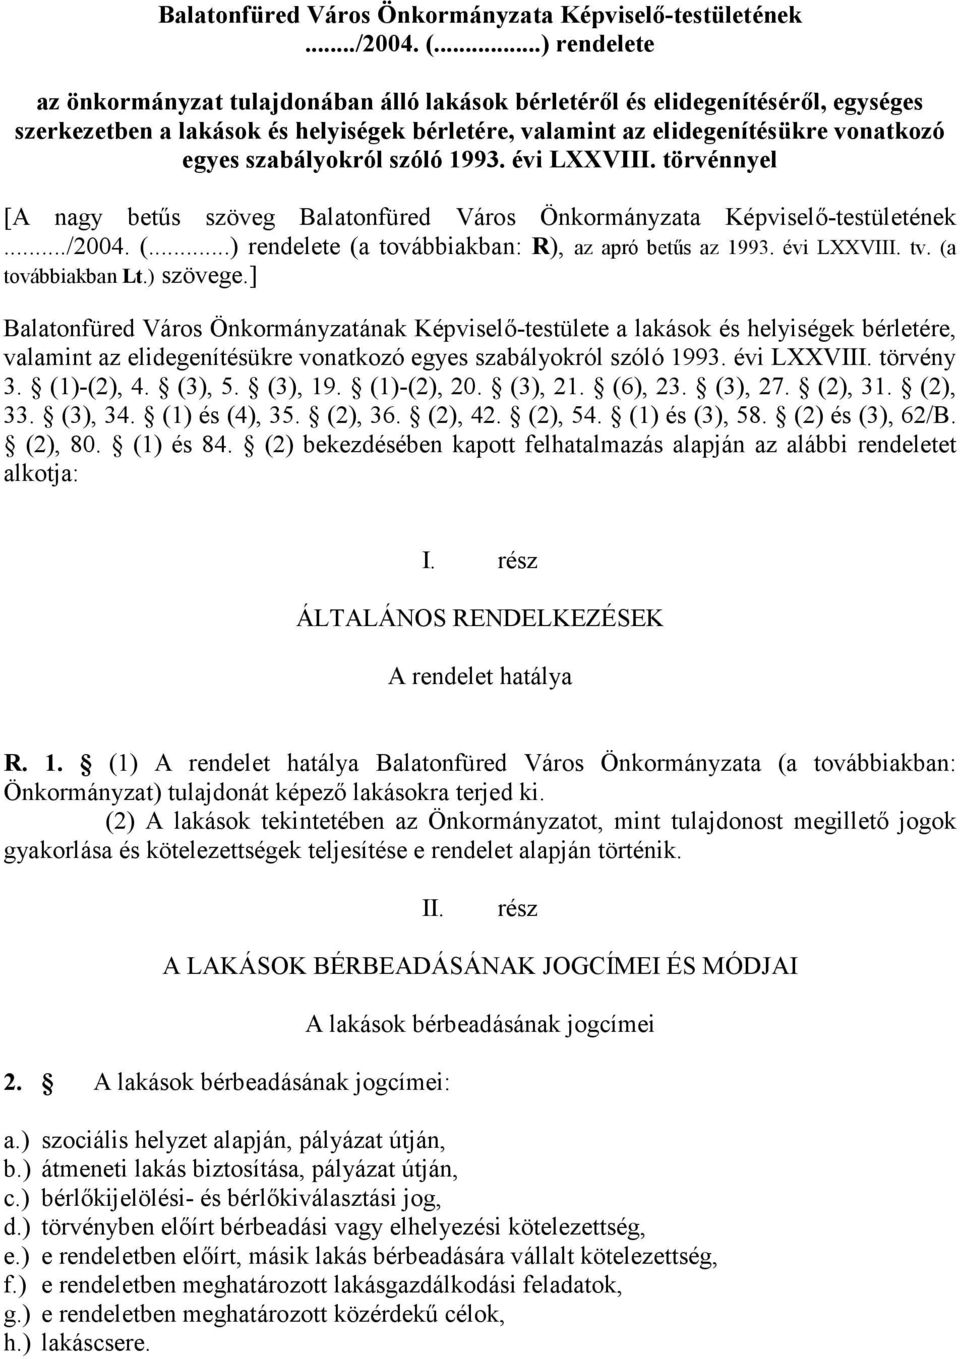 szabályokról szóló 1993. évi LXXVIII. törvénnyel [A nagy betűs szöveg ..) rendelete (a továbbiakban: R), az apró betűs az 1993. évi LXXVIII. tv. (a továbbiakban Lt.) szövege.